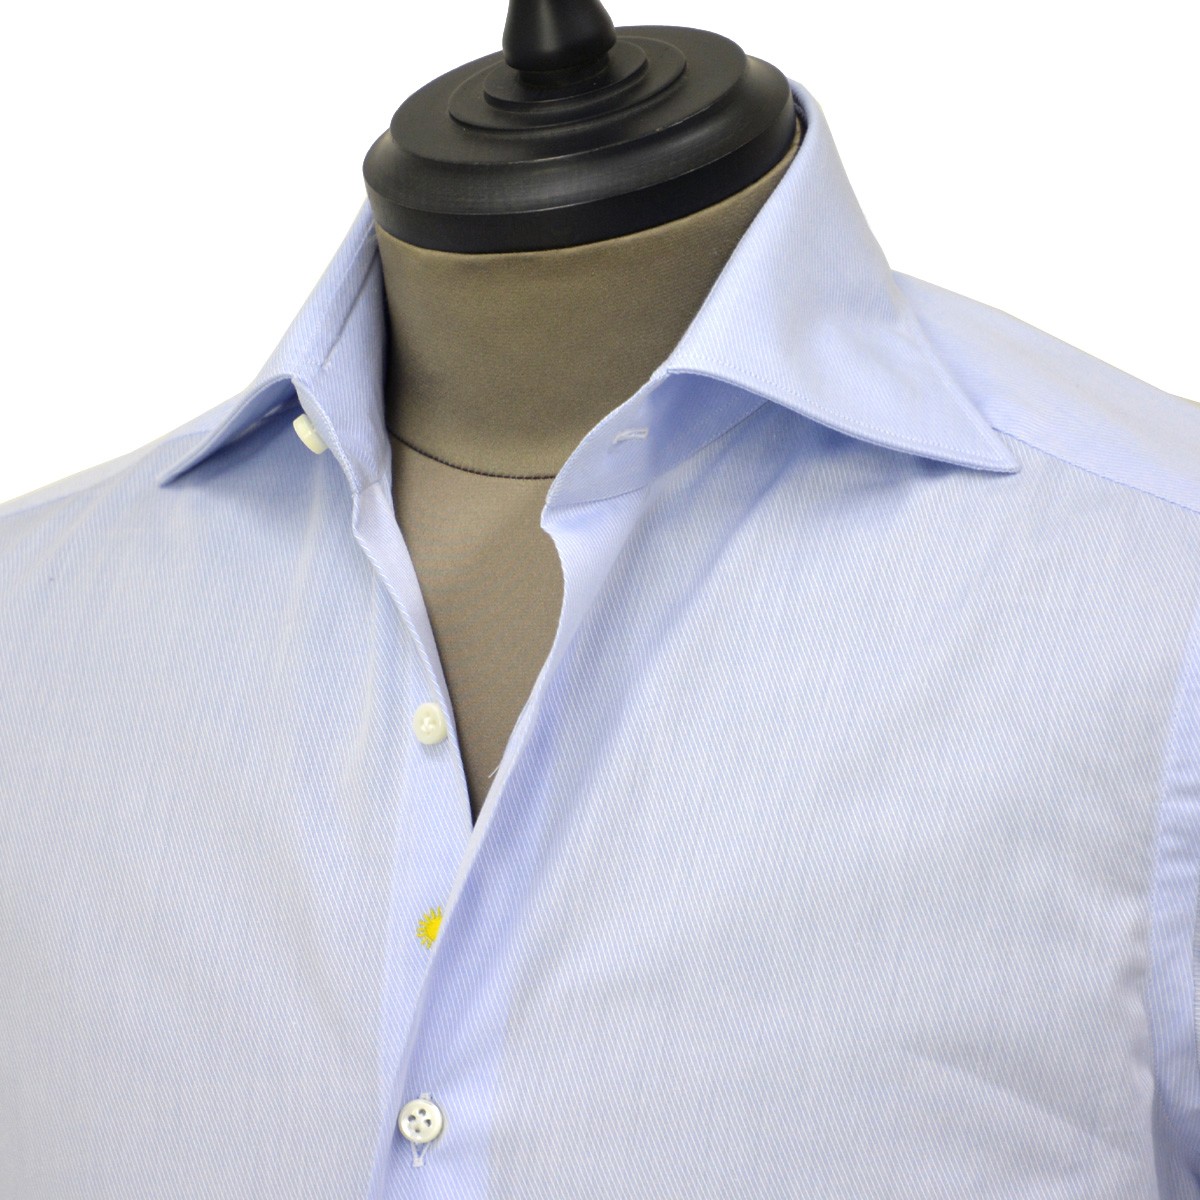 Giannetto【ジャンネット】ドレスシャツ SLIM FIT AB1130 L66 003 BLUE LABEL コットン ツイル ライトブルー